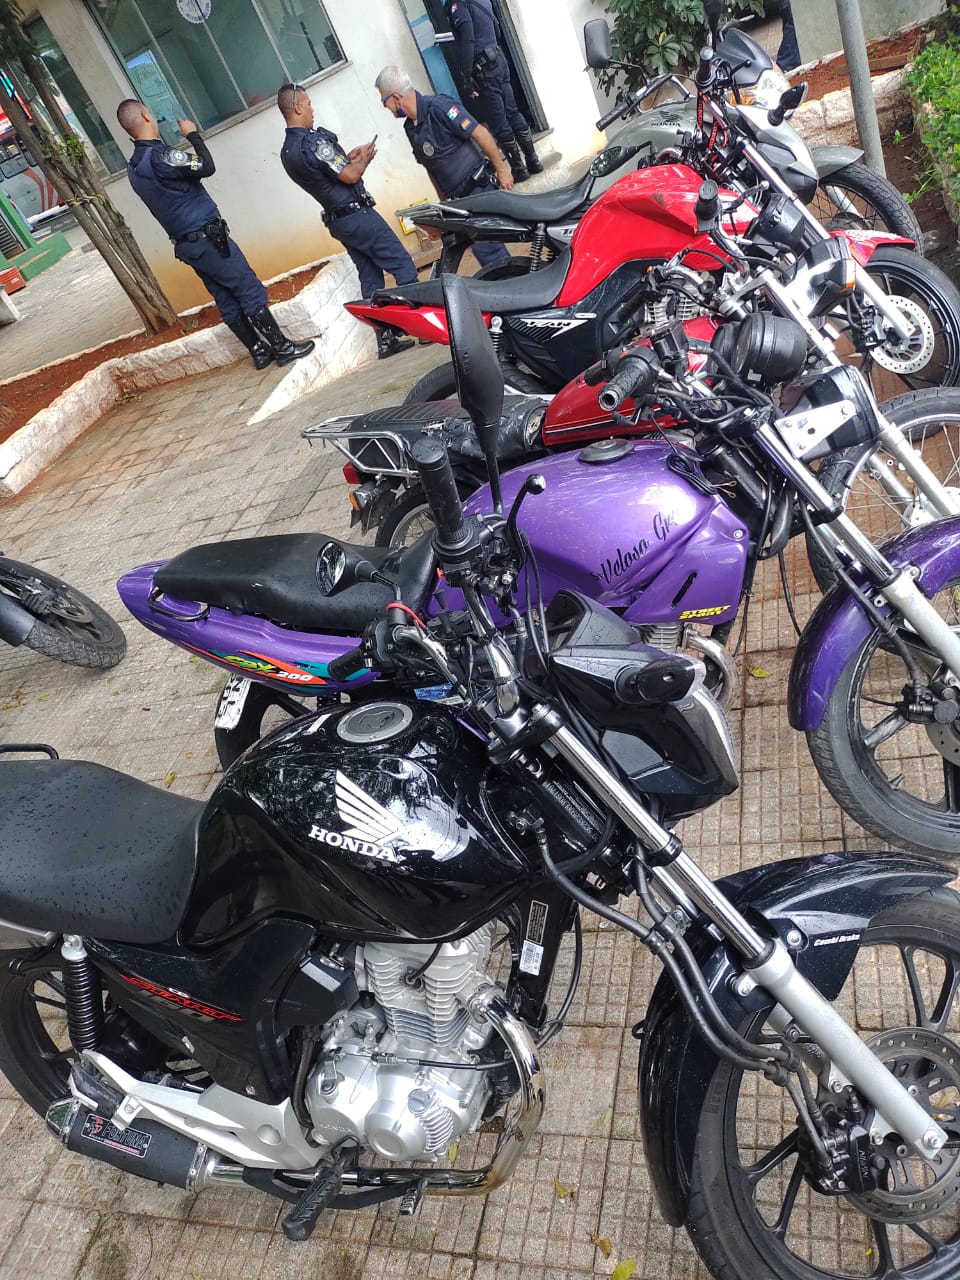 GCM de Osasco cancela rolezinho de motos